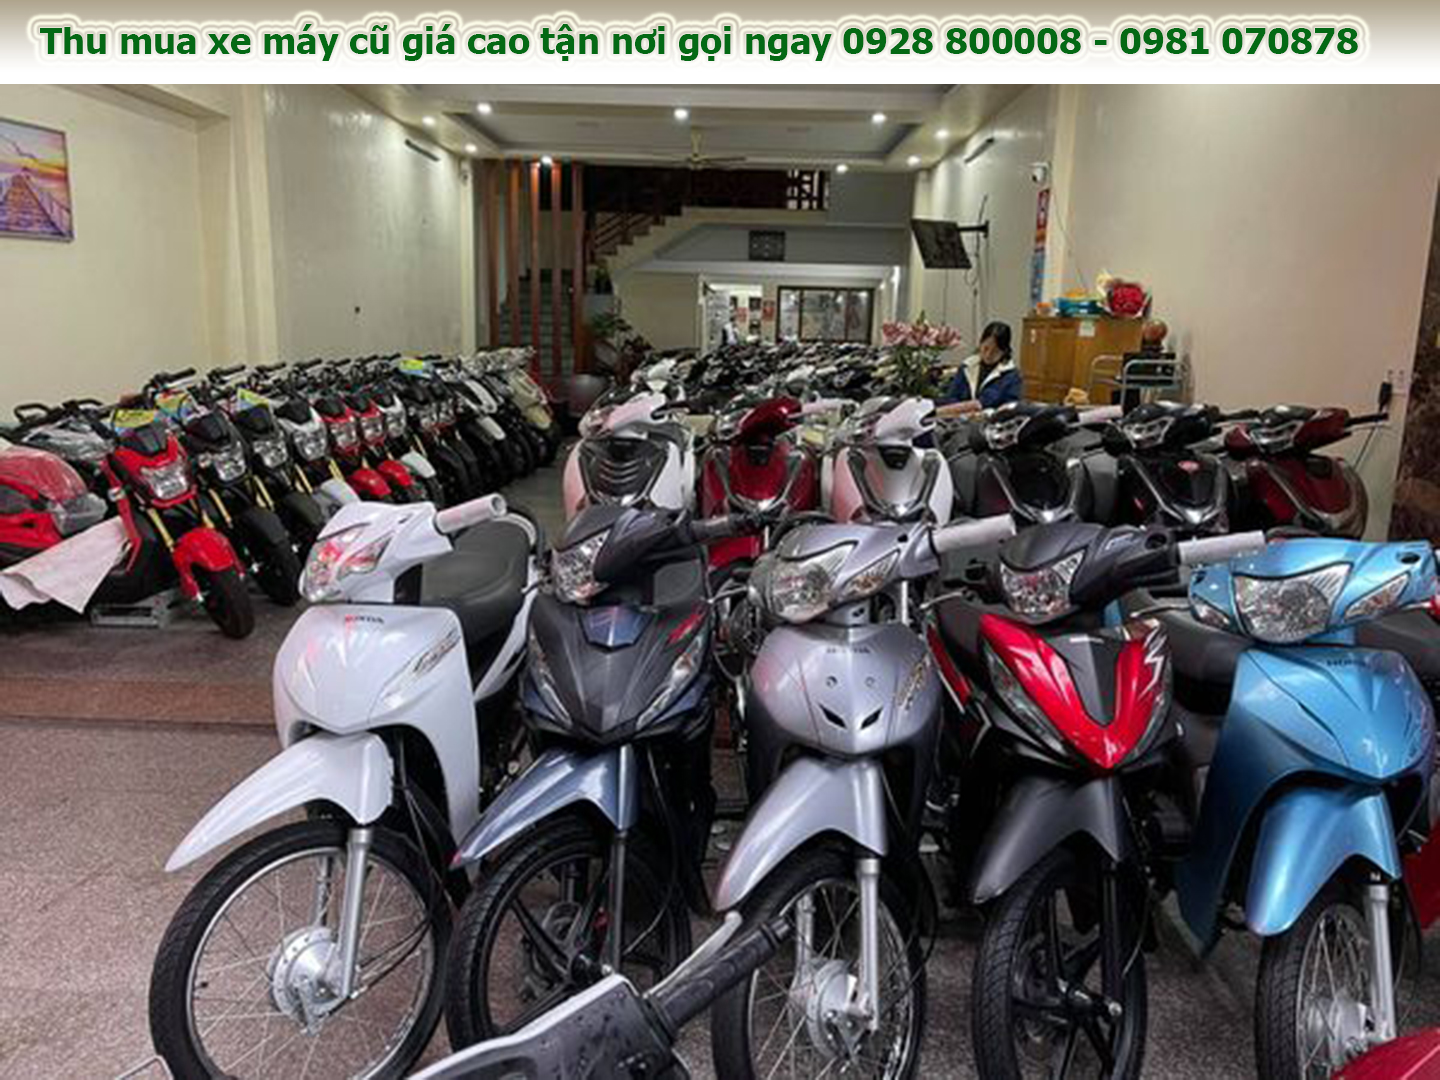 Chợ mua bán xe máy ở Vĩnh Phúc giá tốt uy tín chất lượng